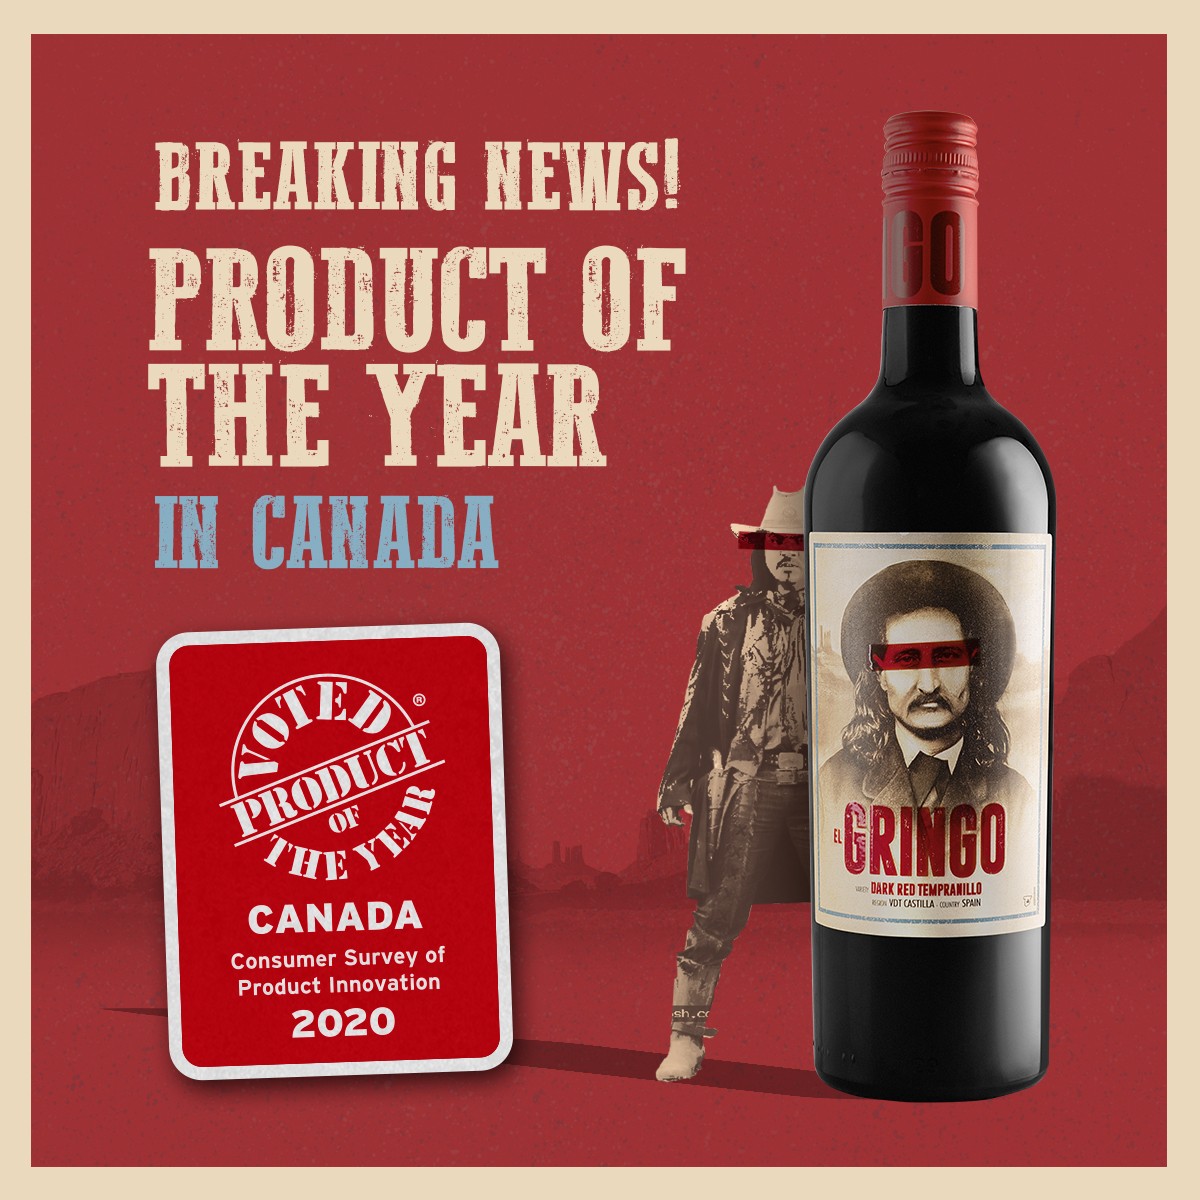 El Gringo Dark Red Tempranillo, Producto del Año en Canada